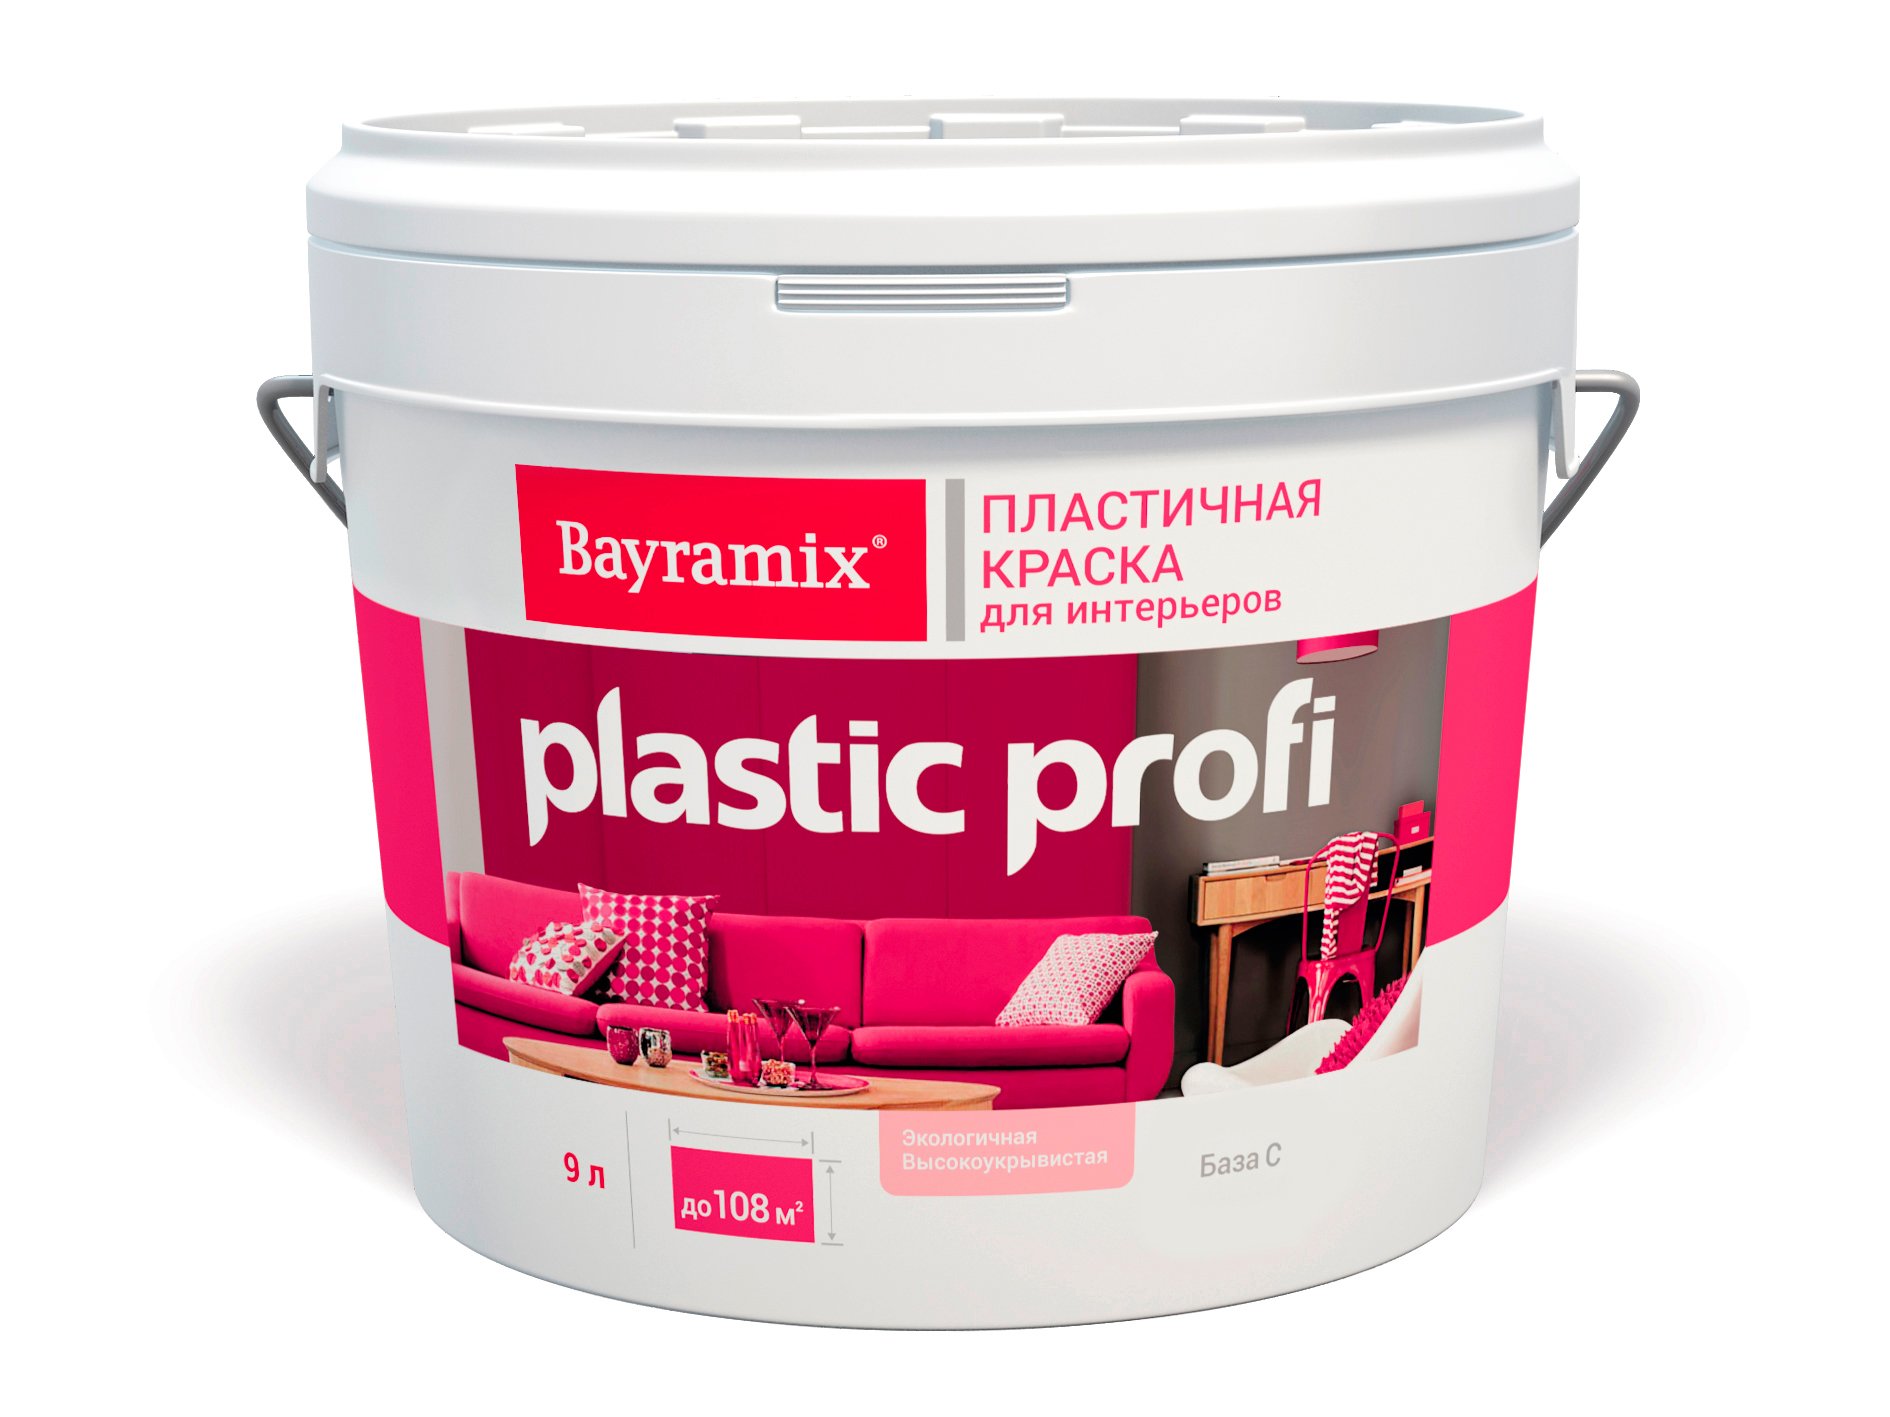 Краска матовая Bayramix Plastik Profi База C бесцветная 12,5кг/9,0л (только колеровка) швабра для пола proff plastik